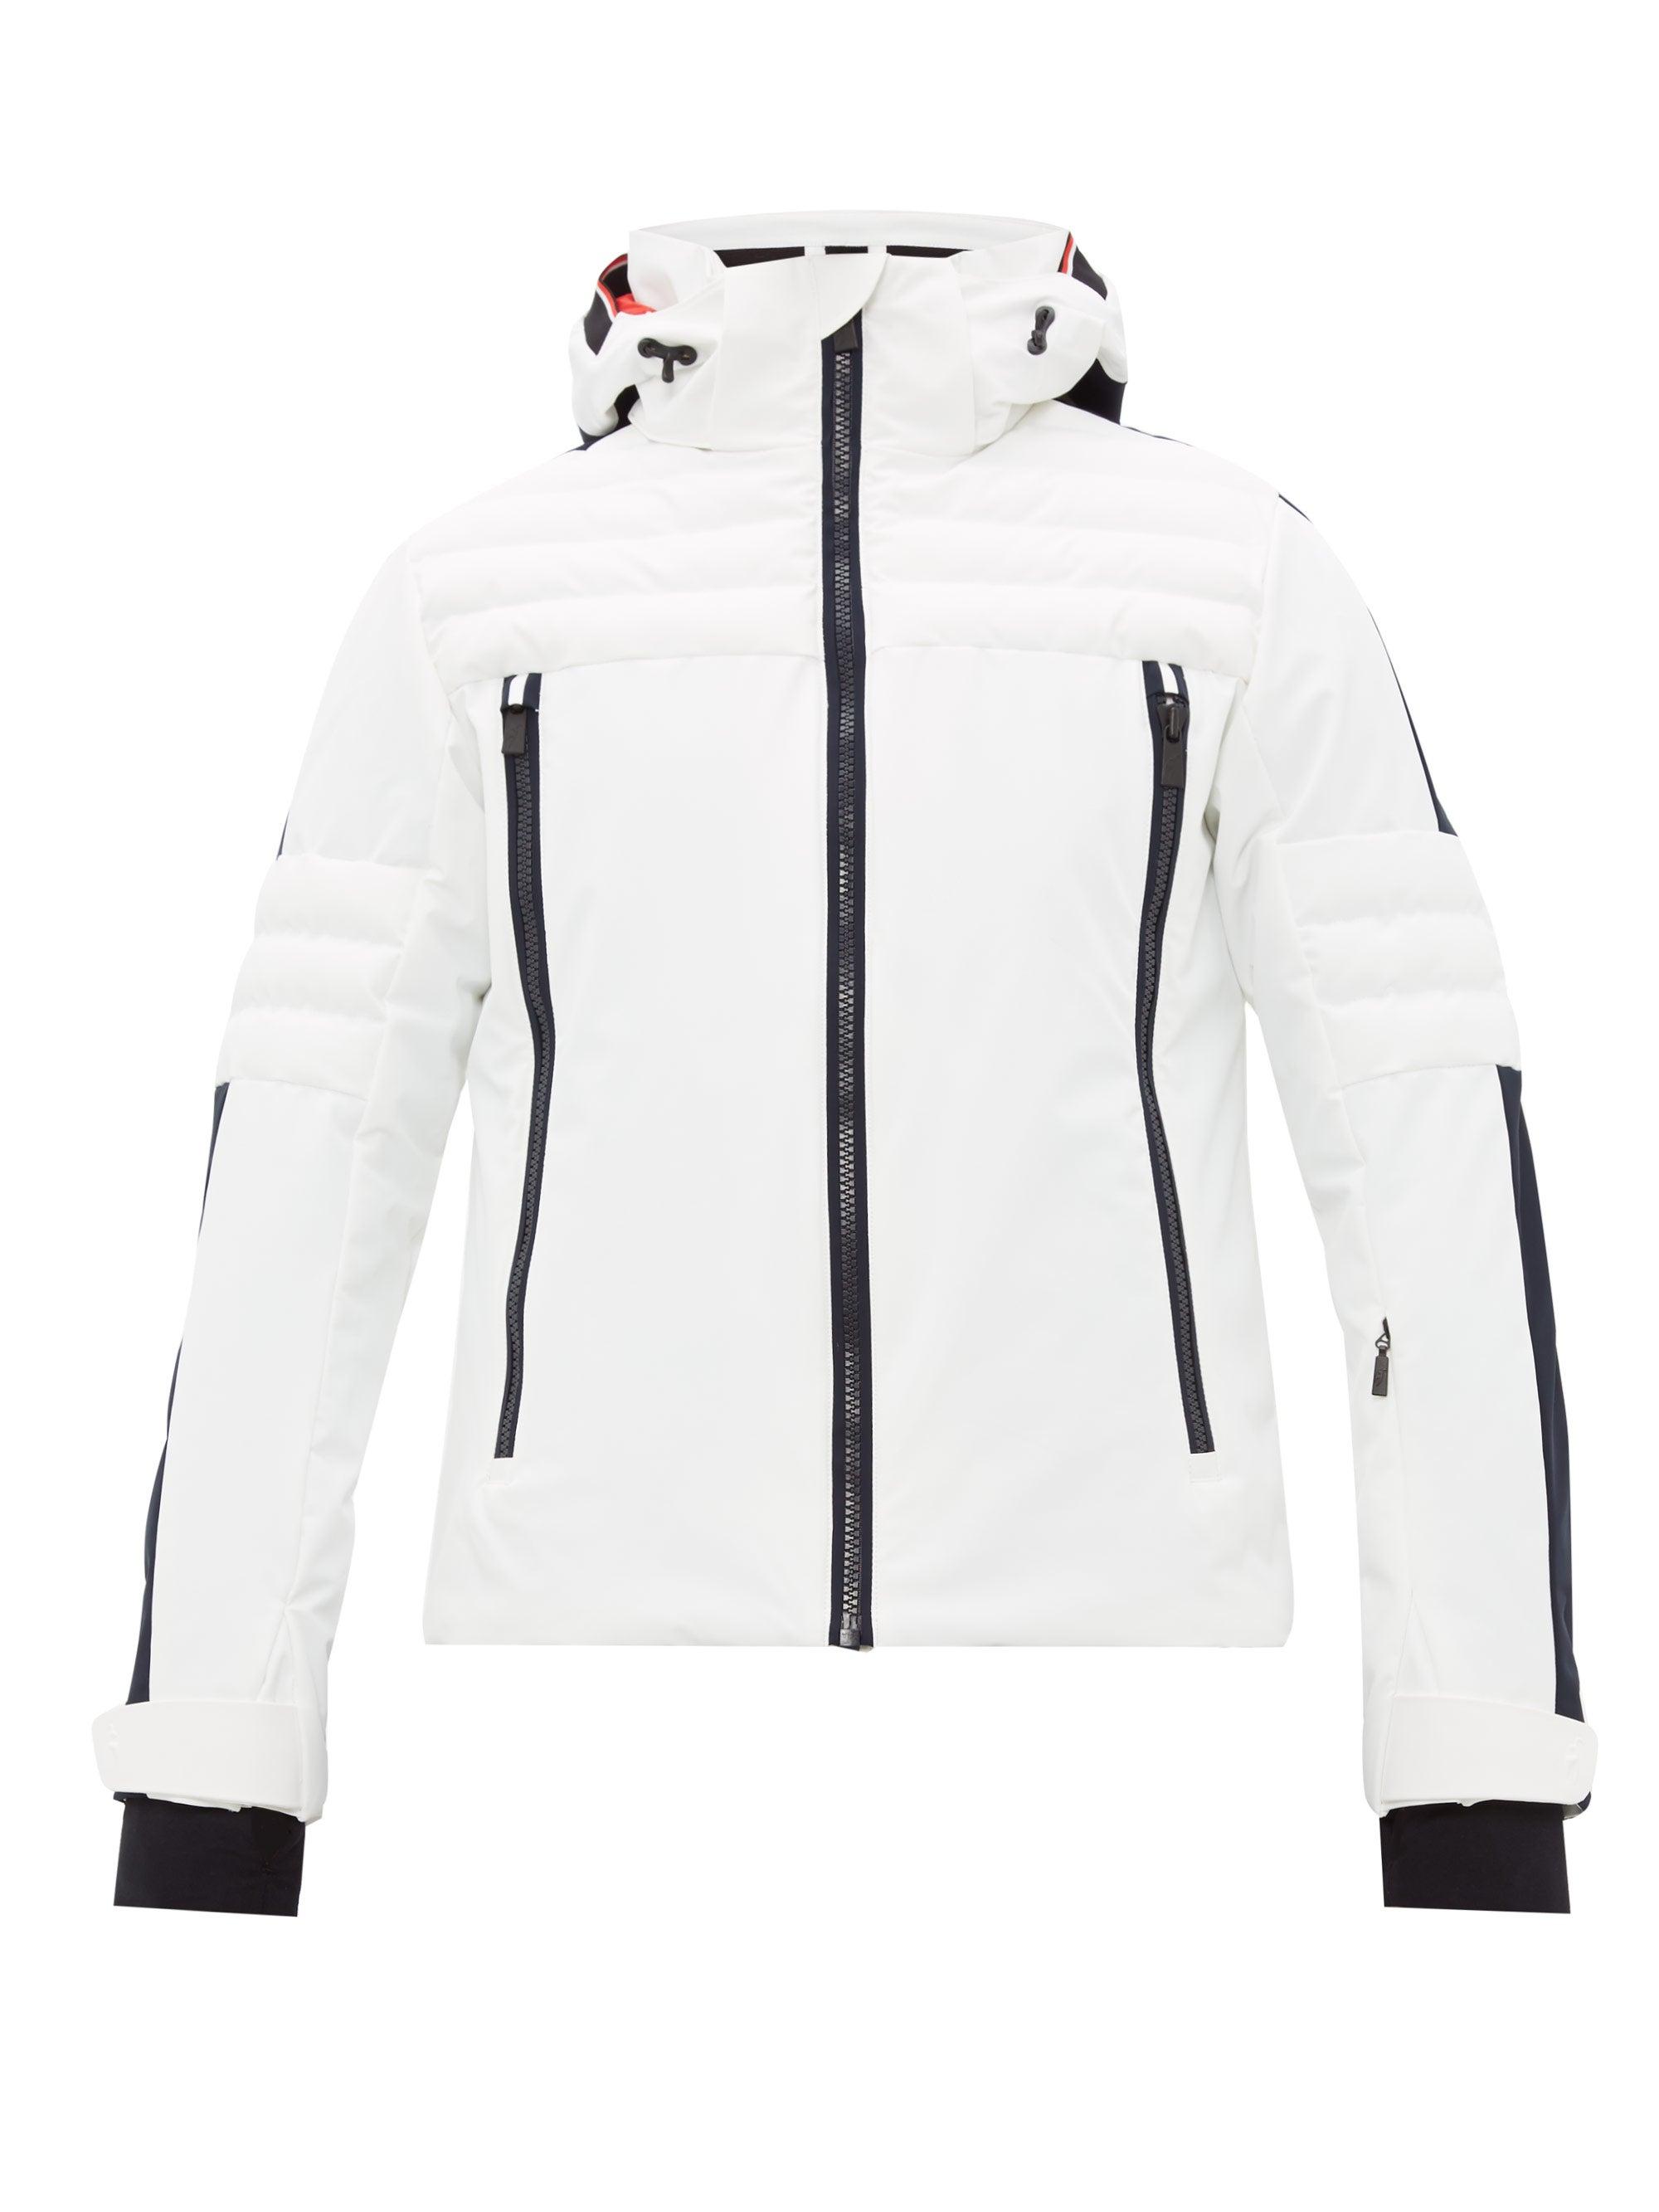 Toni Sailer Elliot Technical Soft-shell Ski Jacket in White for Men - Lyst